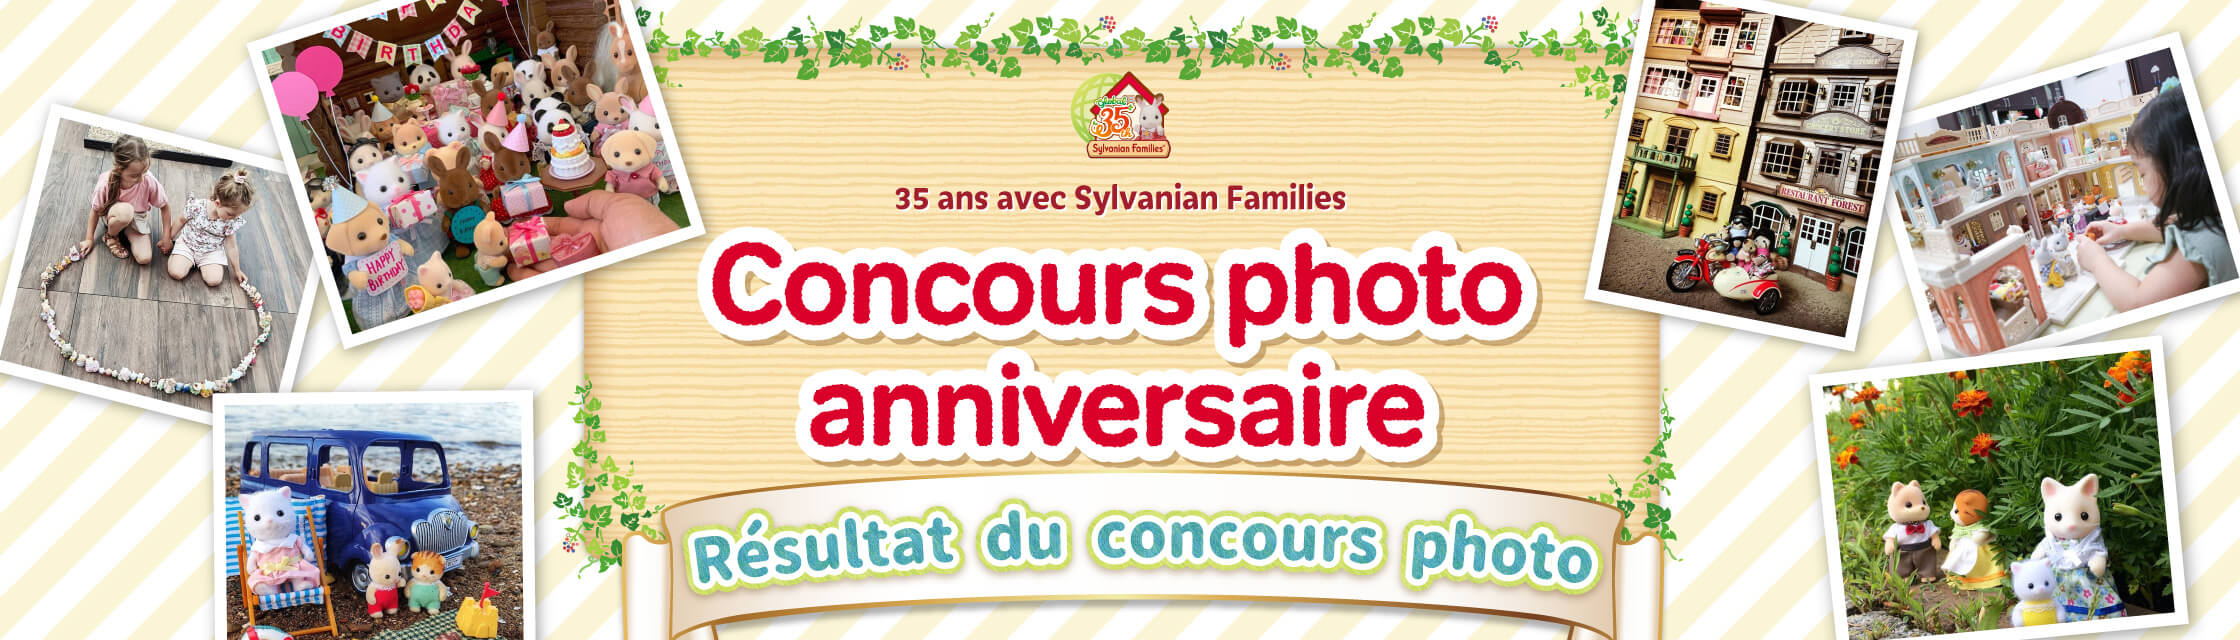 35 ans avec Sylvanian Families Concours photo anniversaire